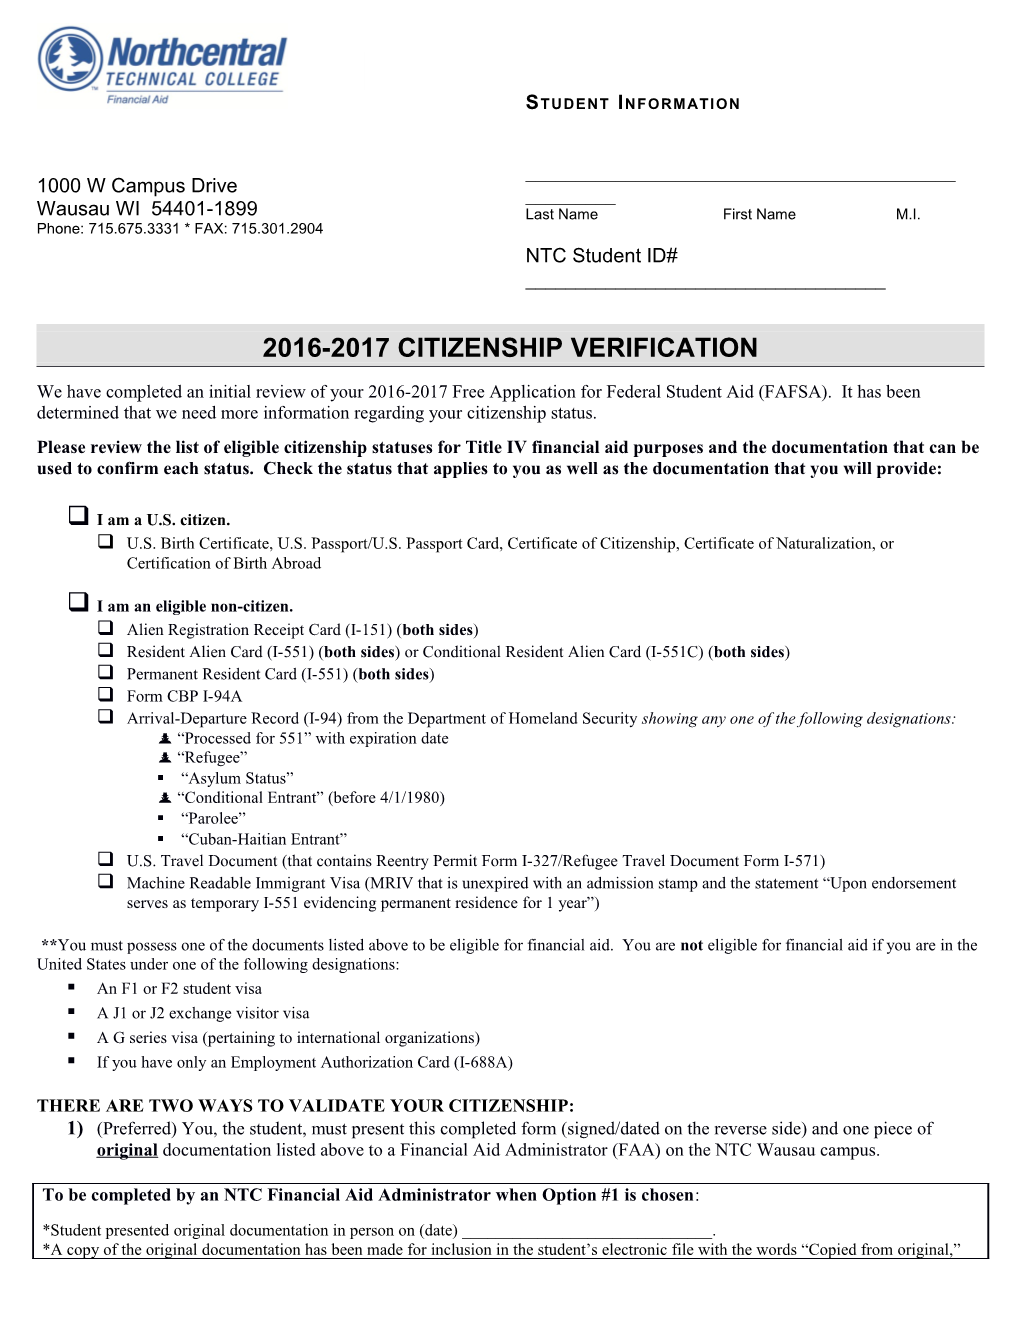 2016-2017 Citizenship Verification